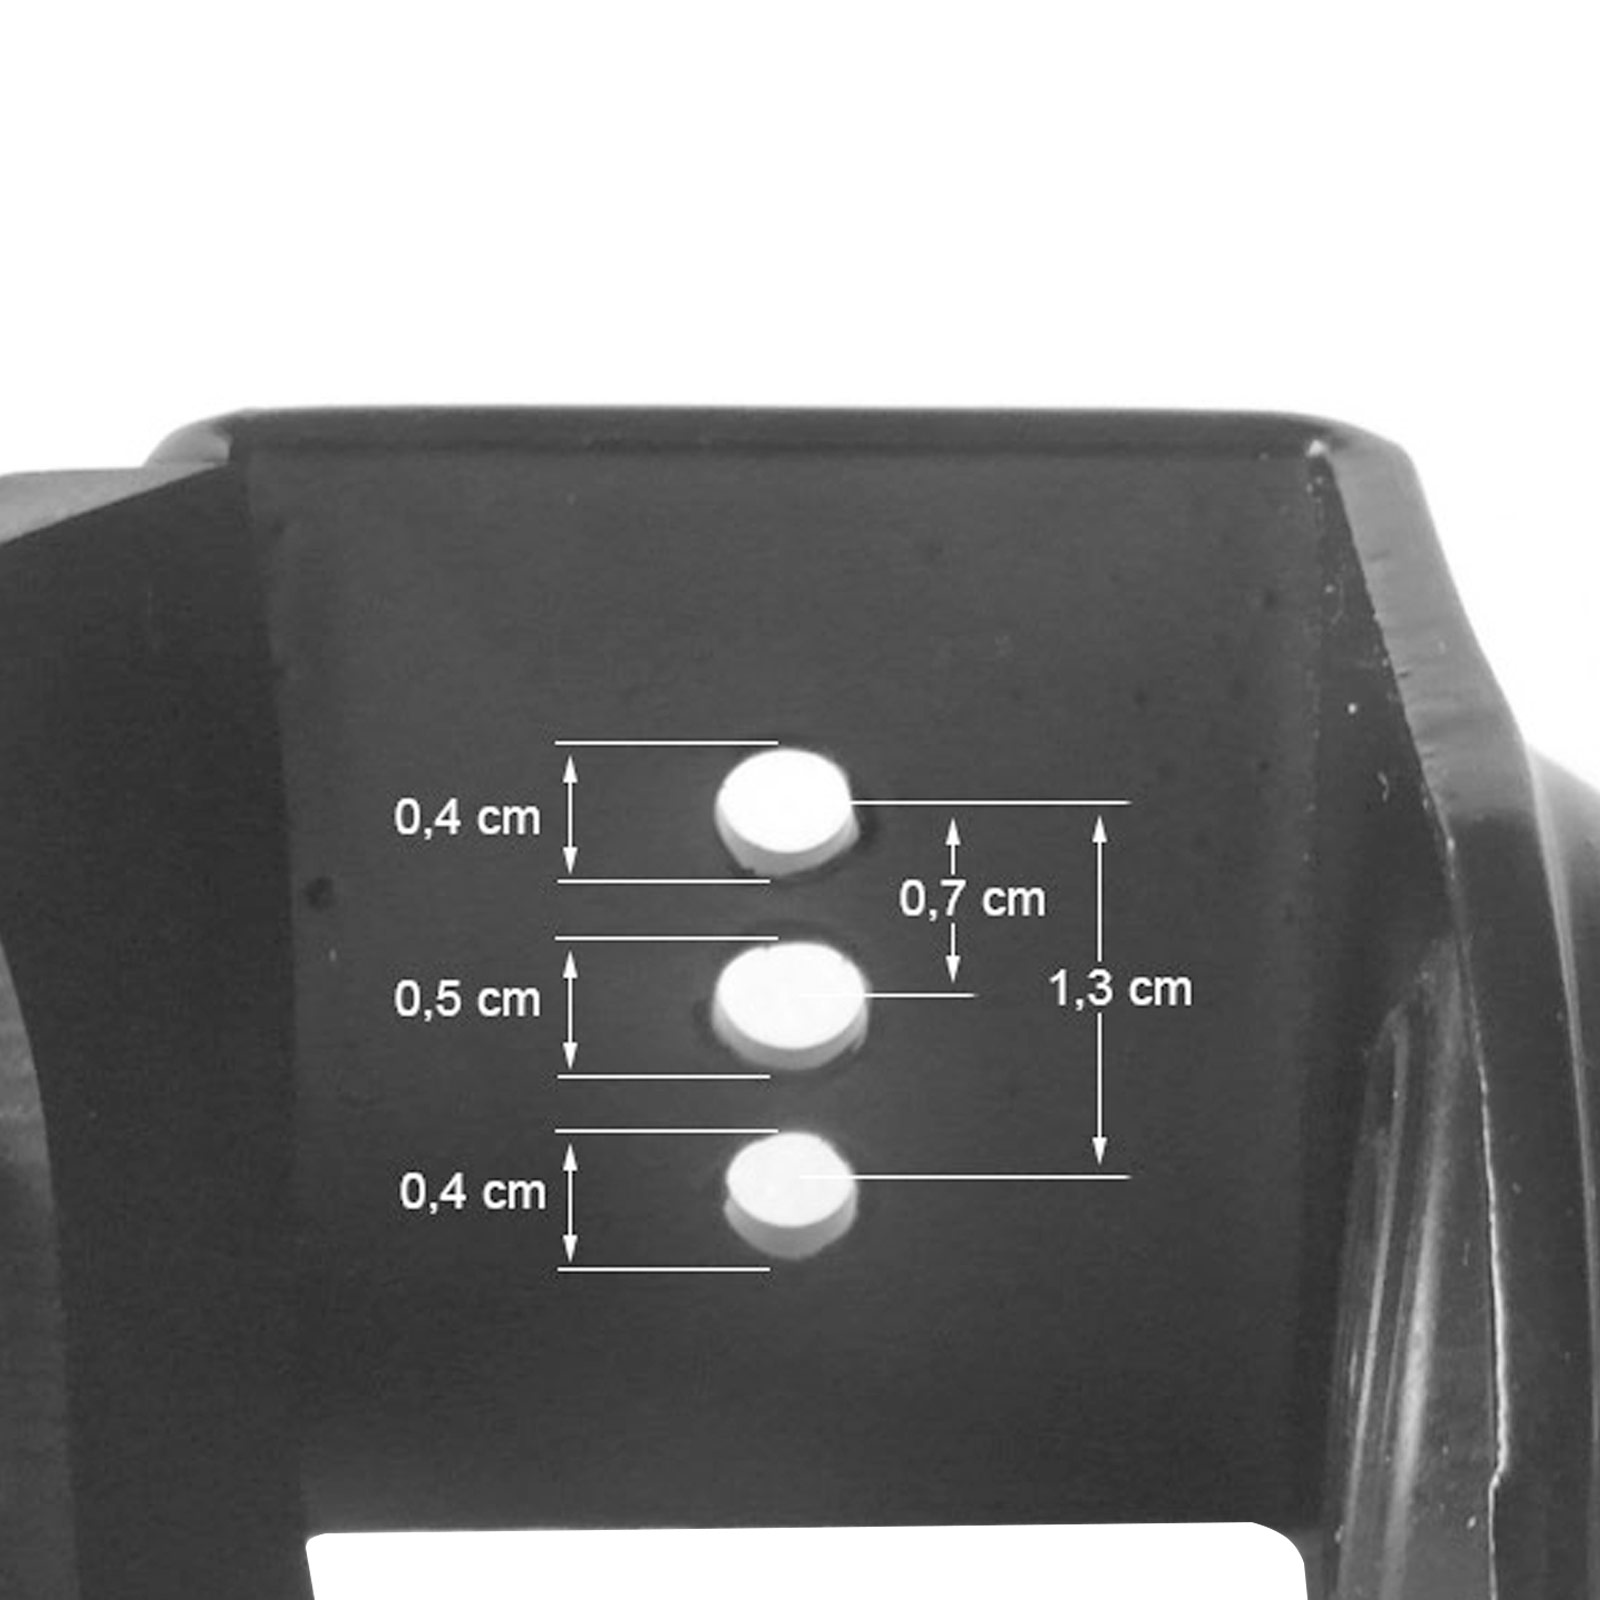 INSTRUMENTS Modell: schwarz Bohrungen U-Klemme Gewinde DRALL FK02, mit Klammer, Fotozubehör ohne 3